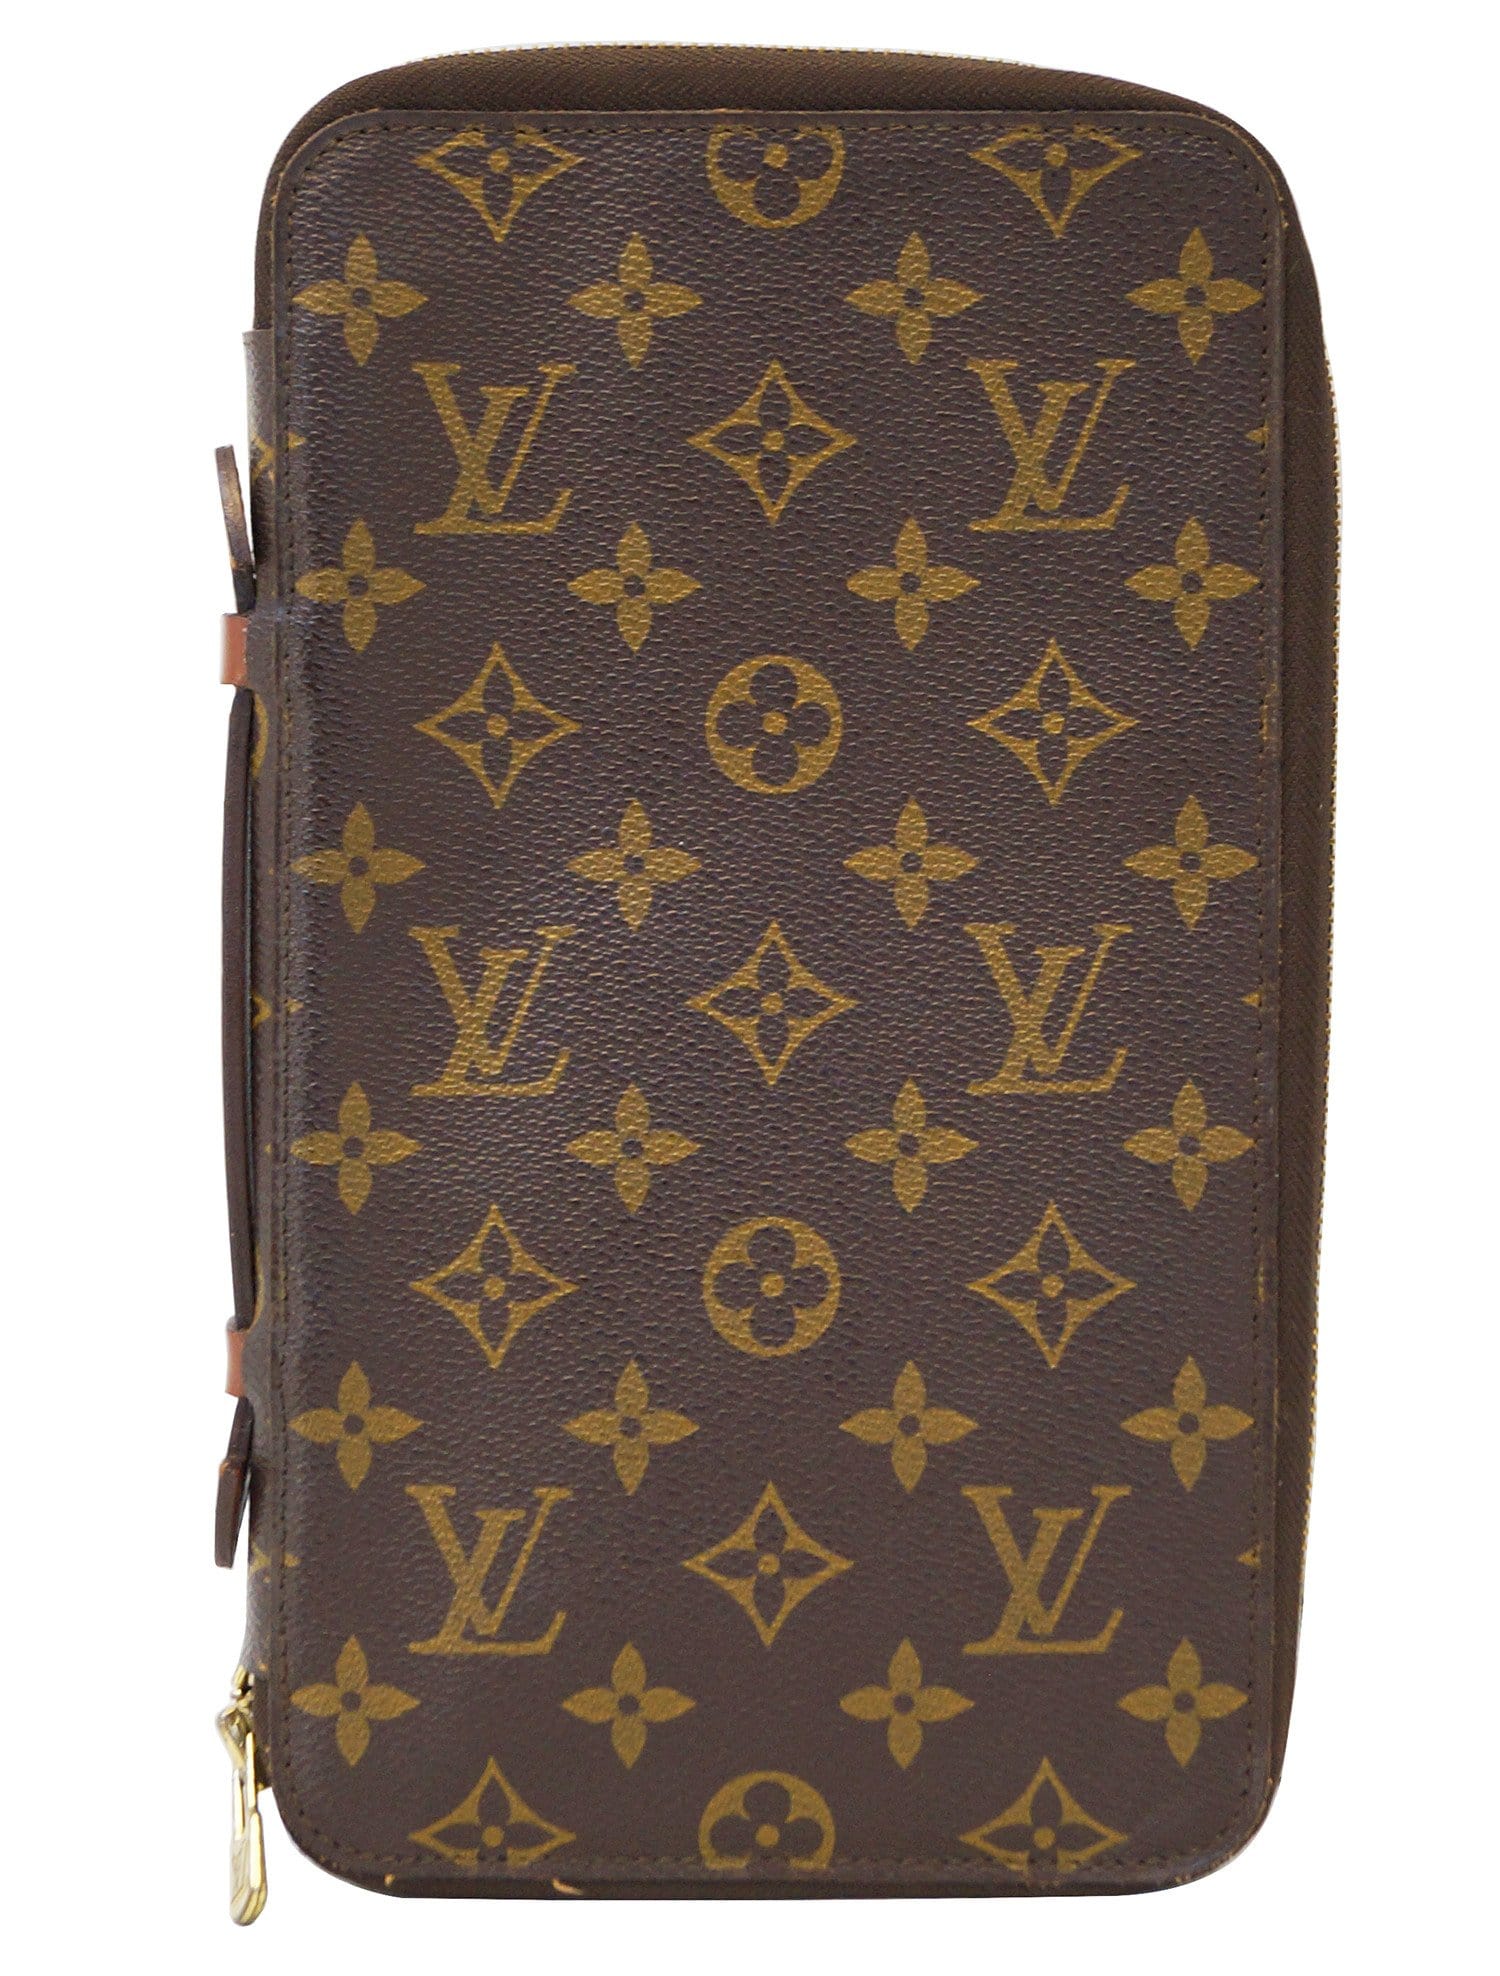 Authentic Louis Vuitton Monogram Organizer de Voyage Travel Case